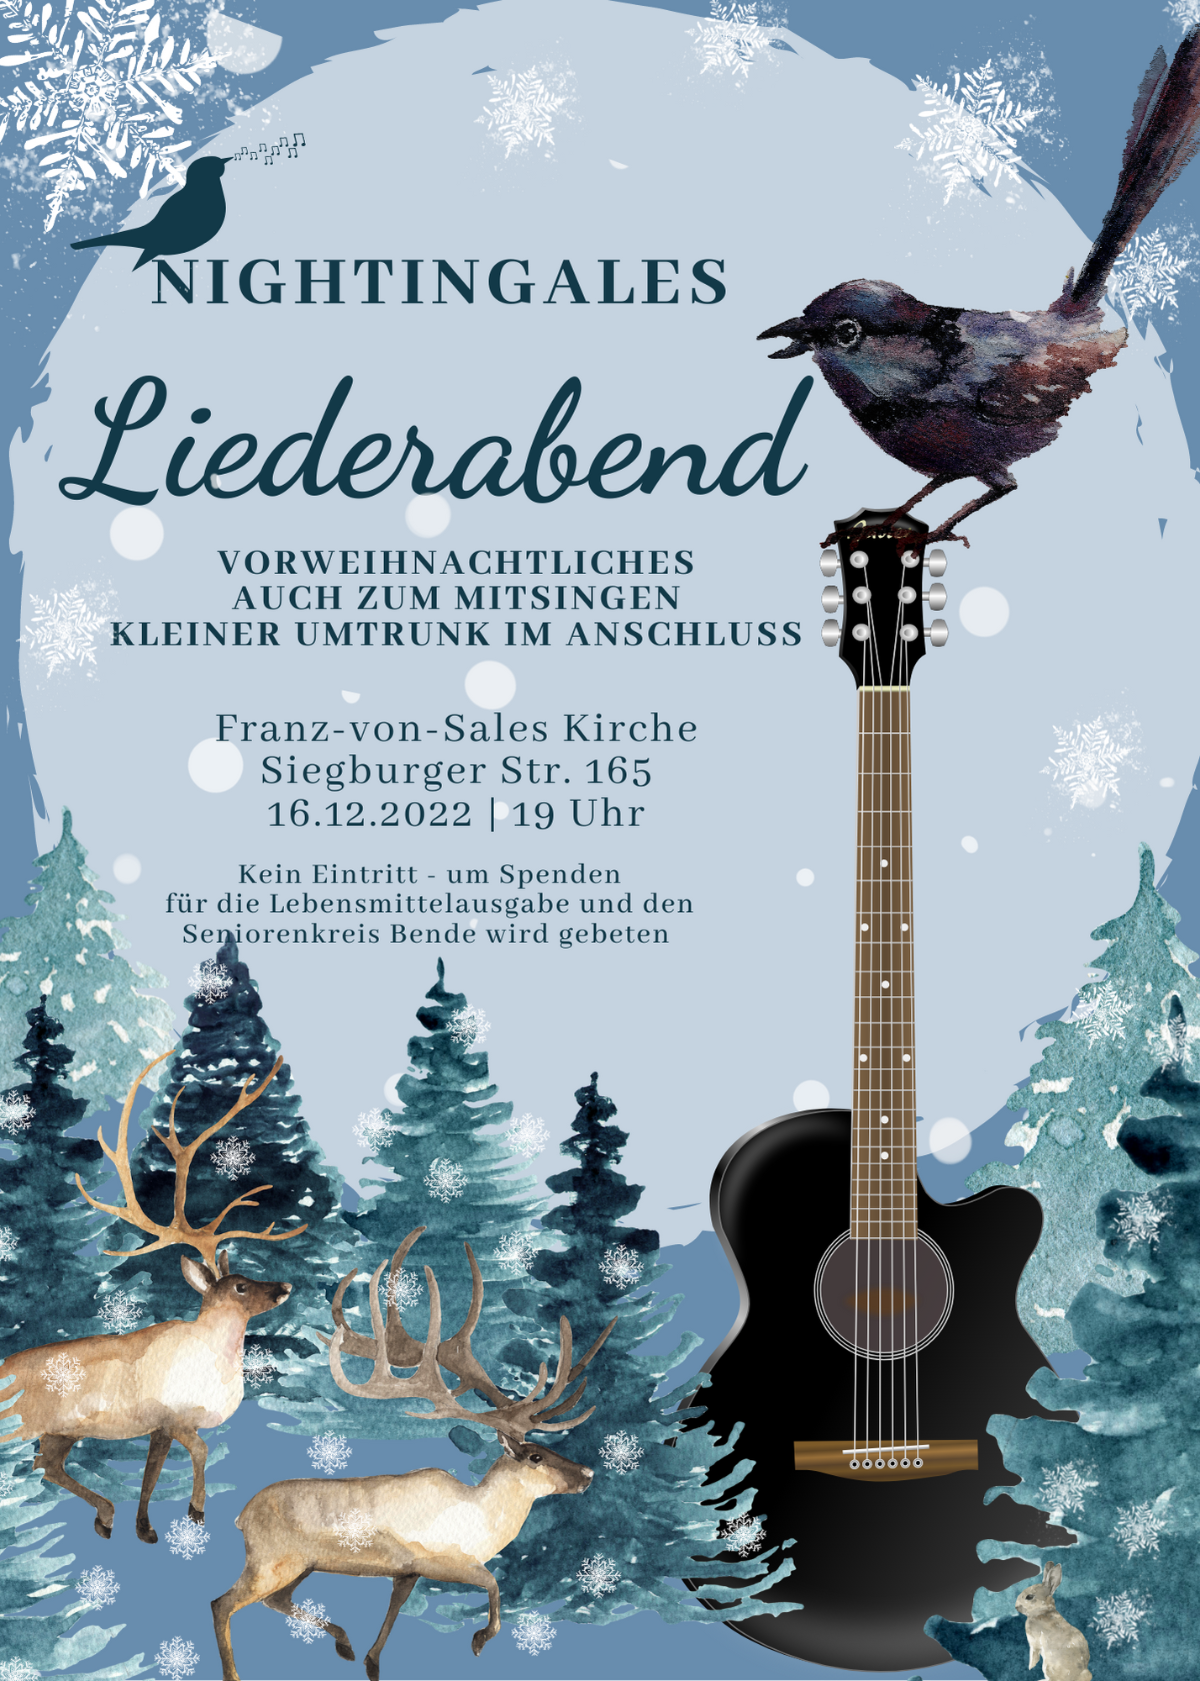 Nightingales Liederabend Weihnachten 22